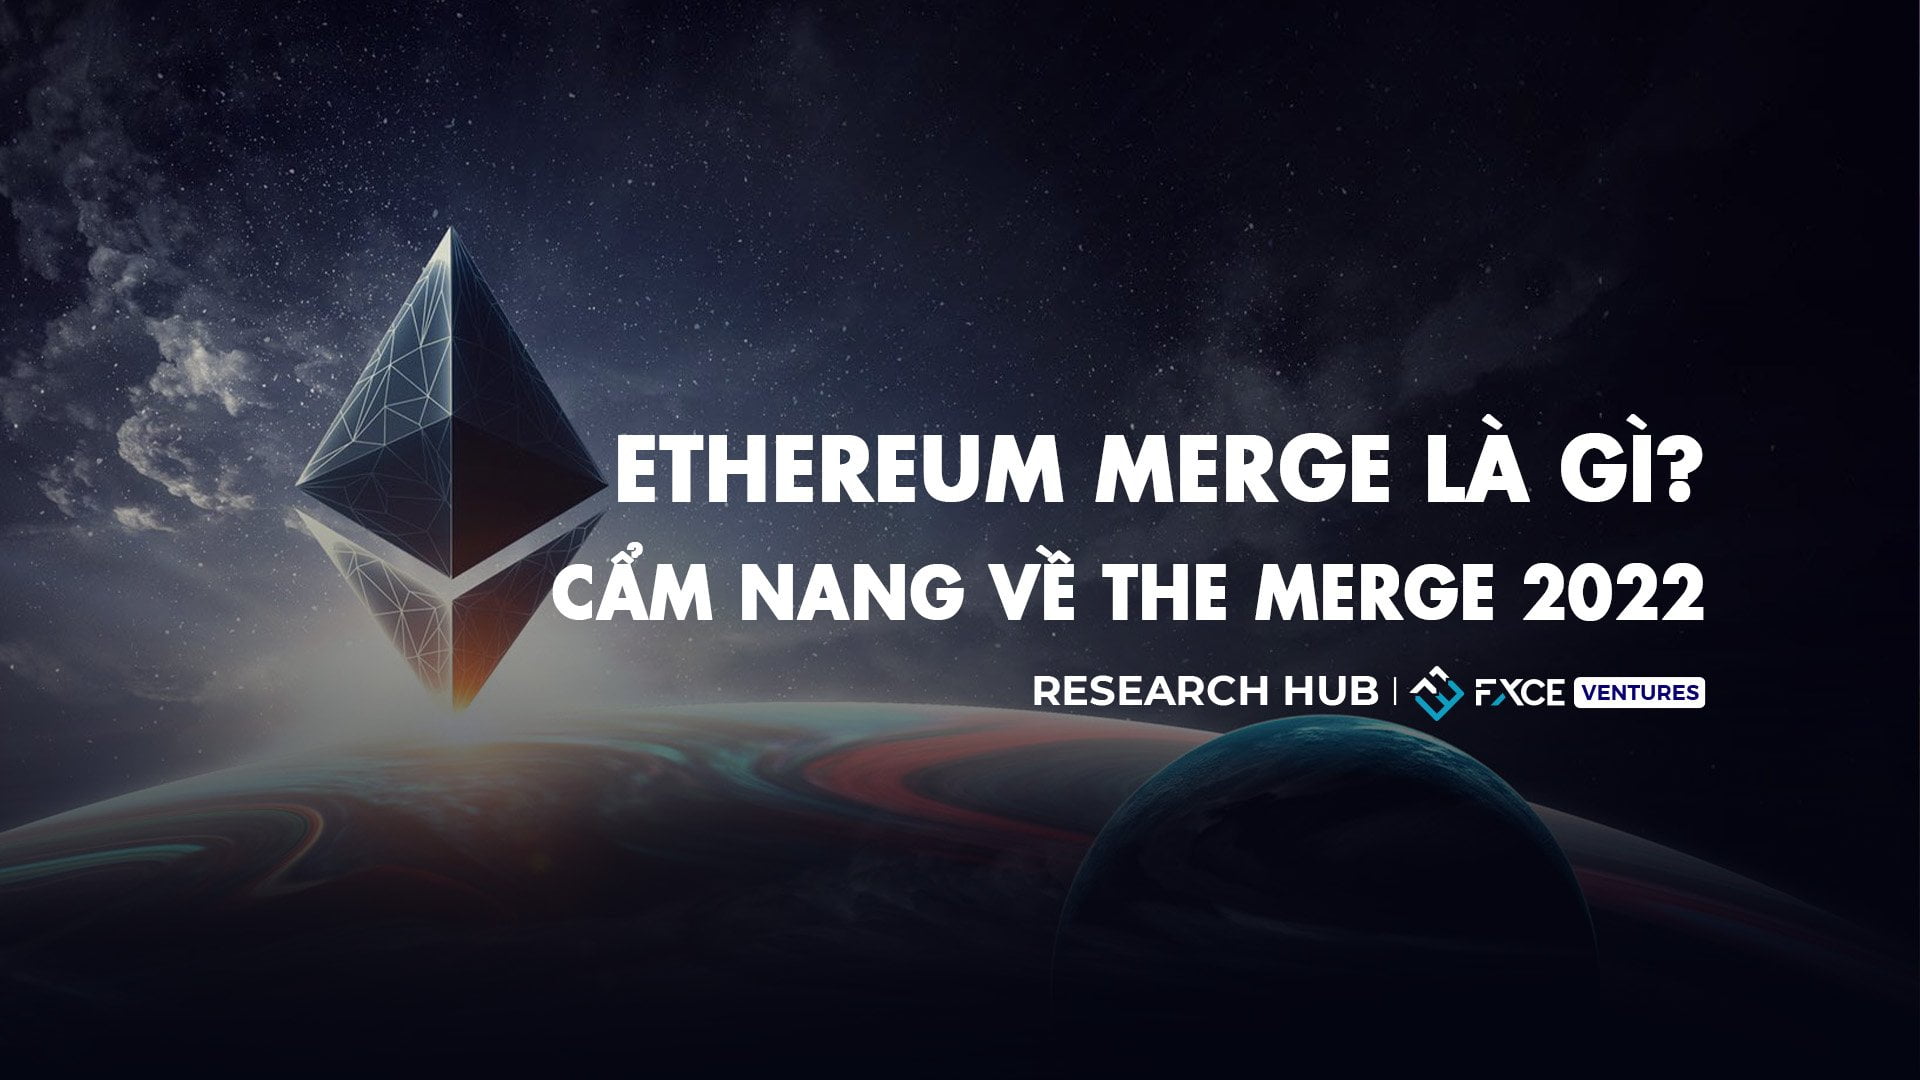 Ethereum Merge là gì? Cẩm nang về The Merge 2022